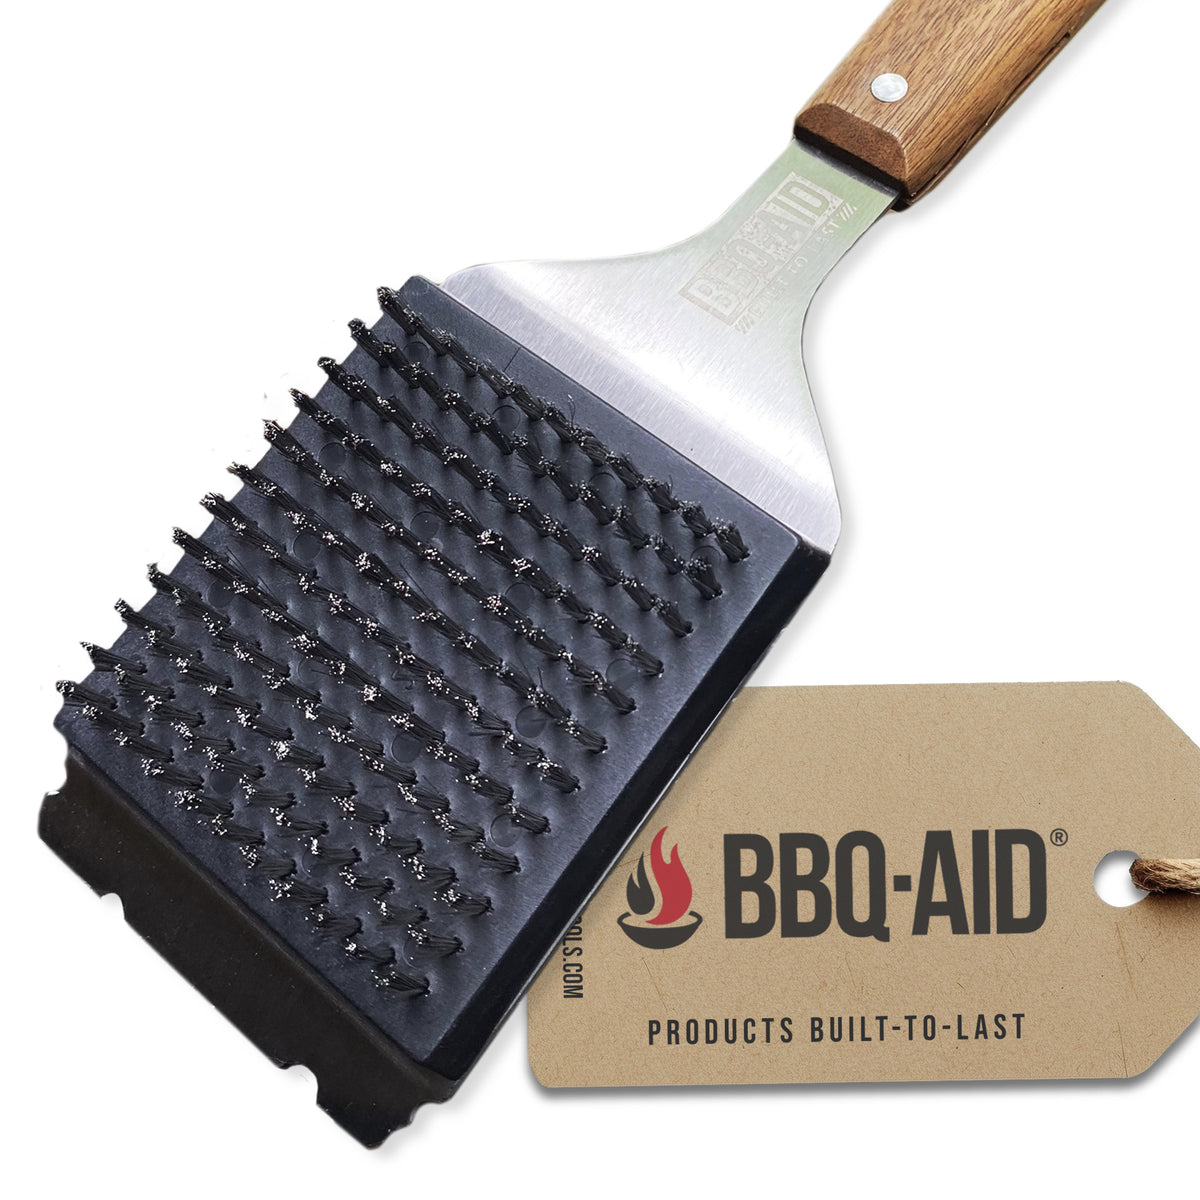 BBQ-AID Bristle Free Grill Brush and Scraper